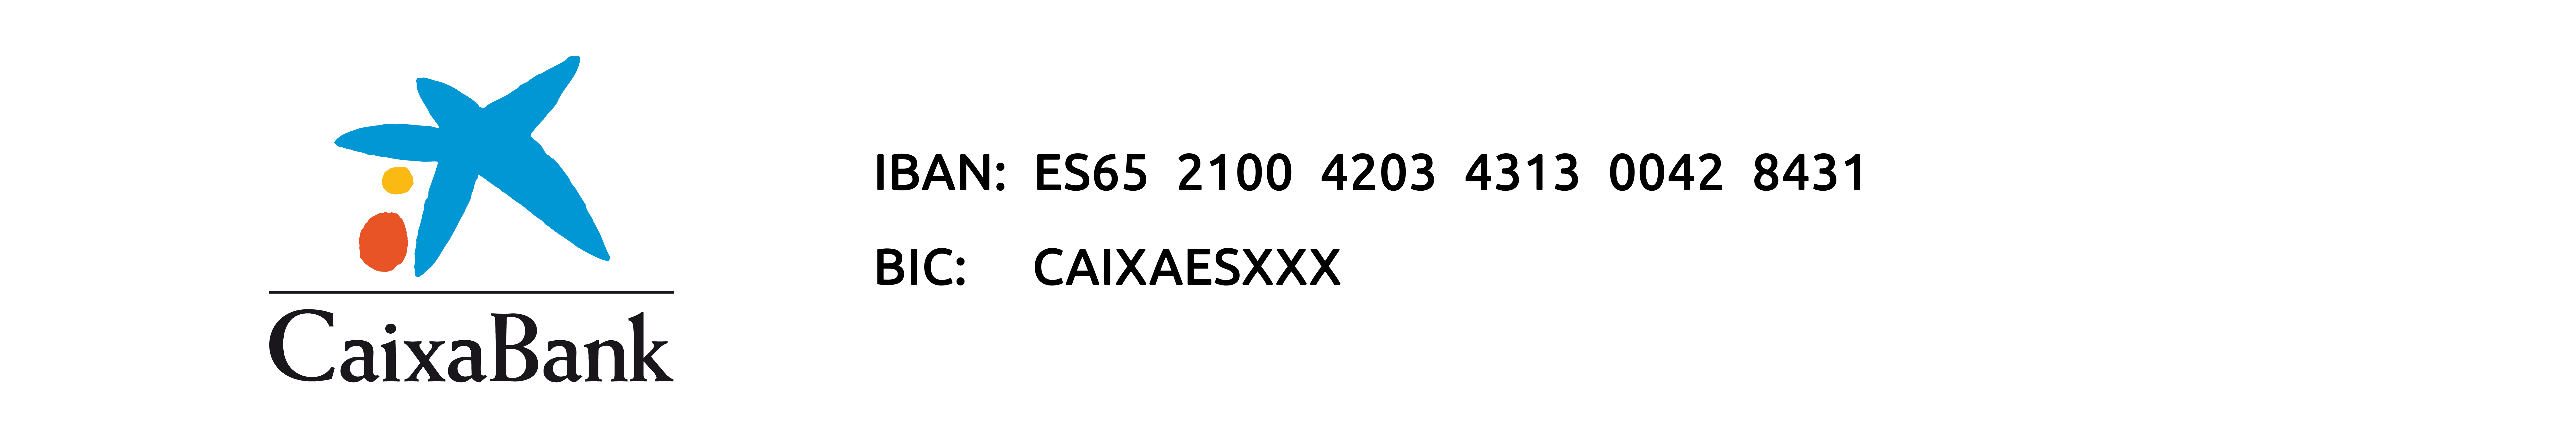 Numero de cuenta transferencias Caixabank